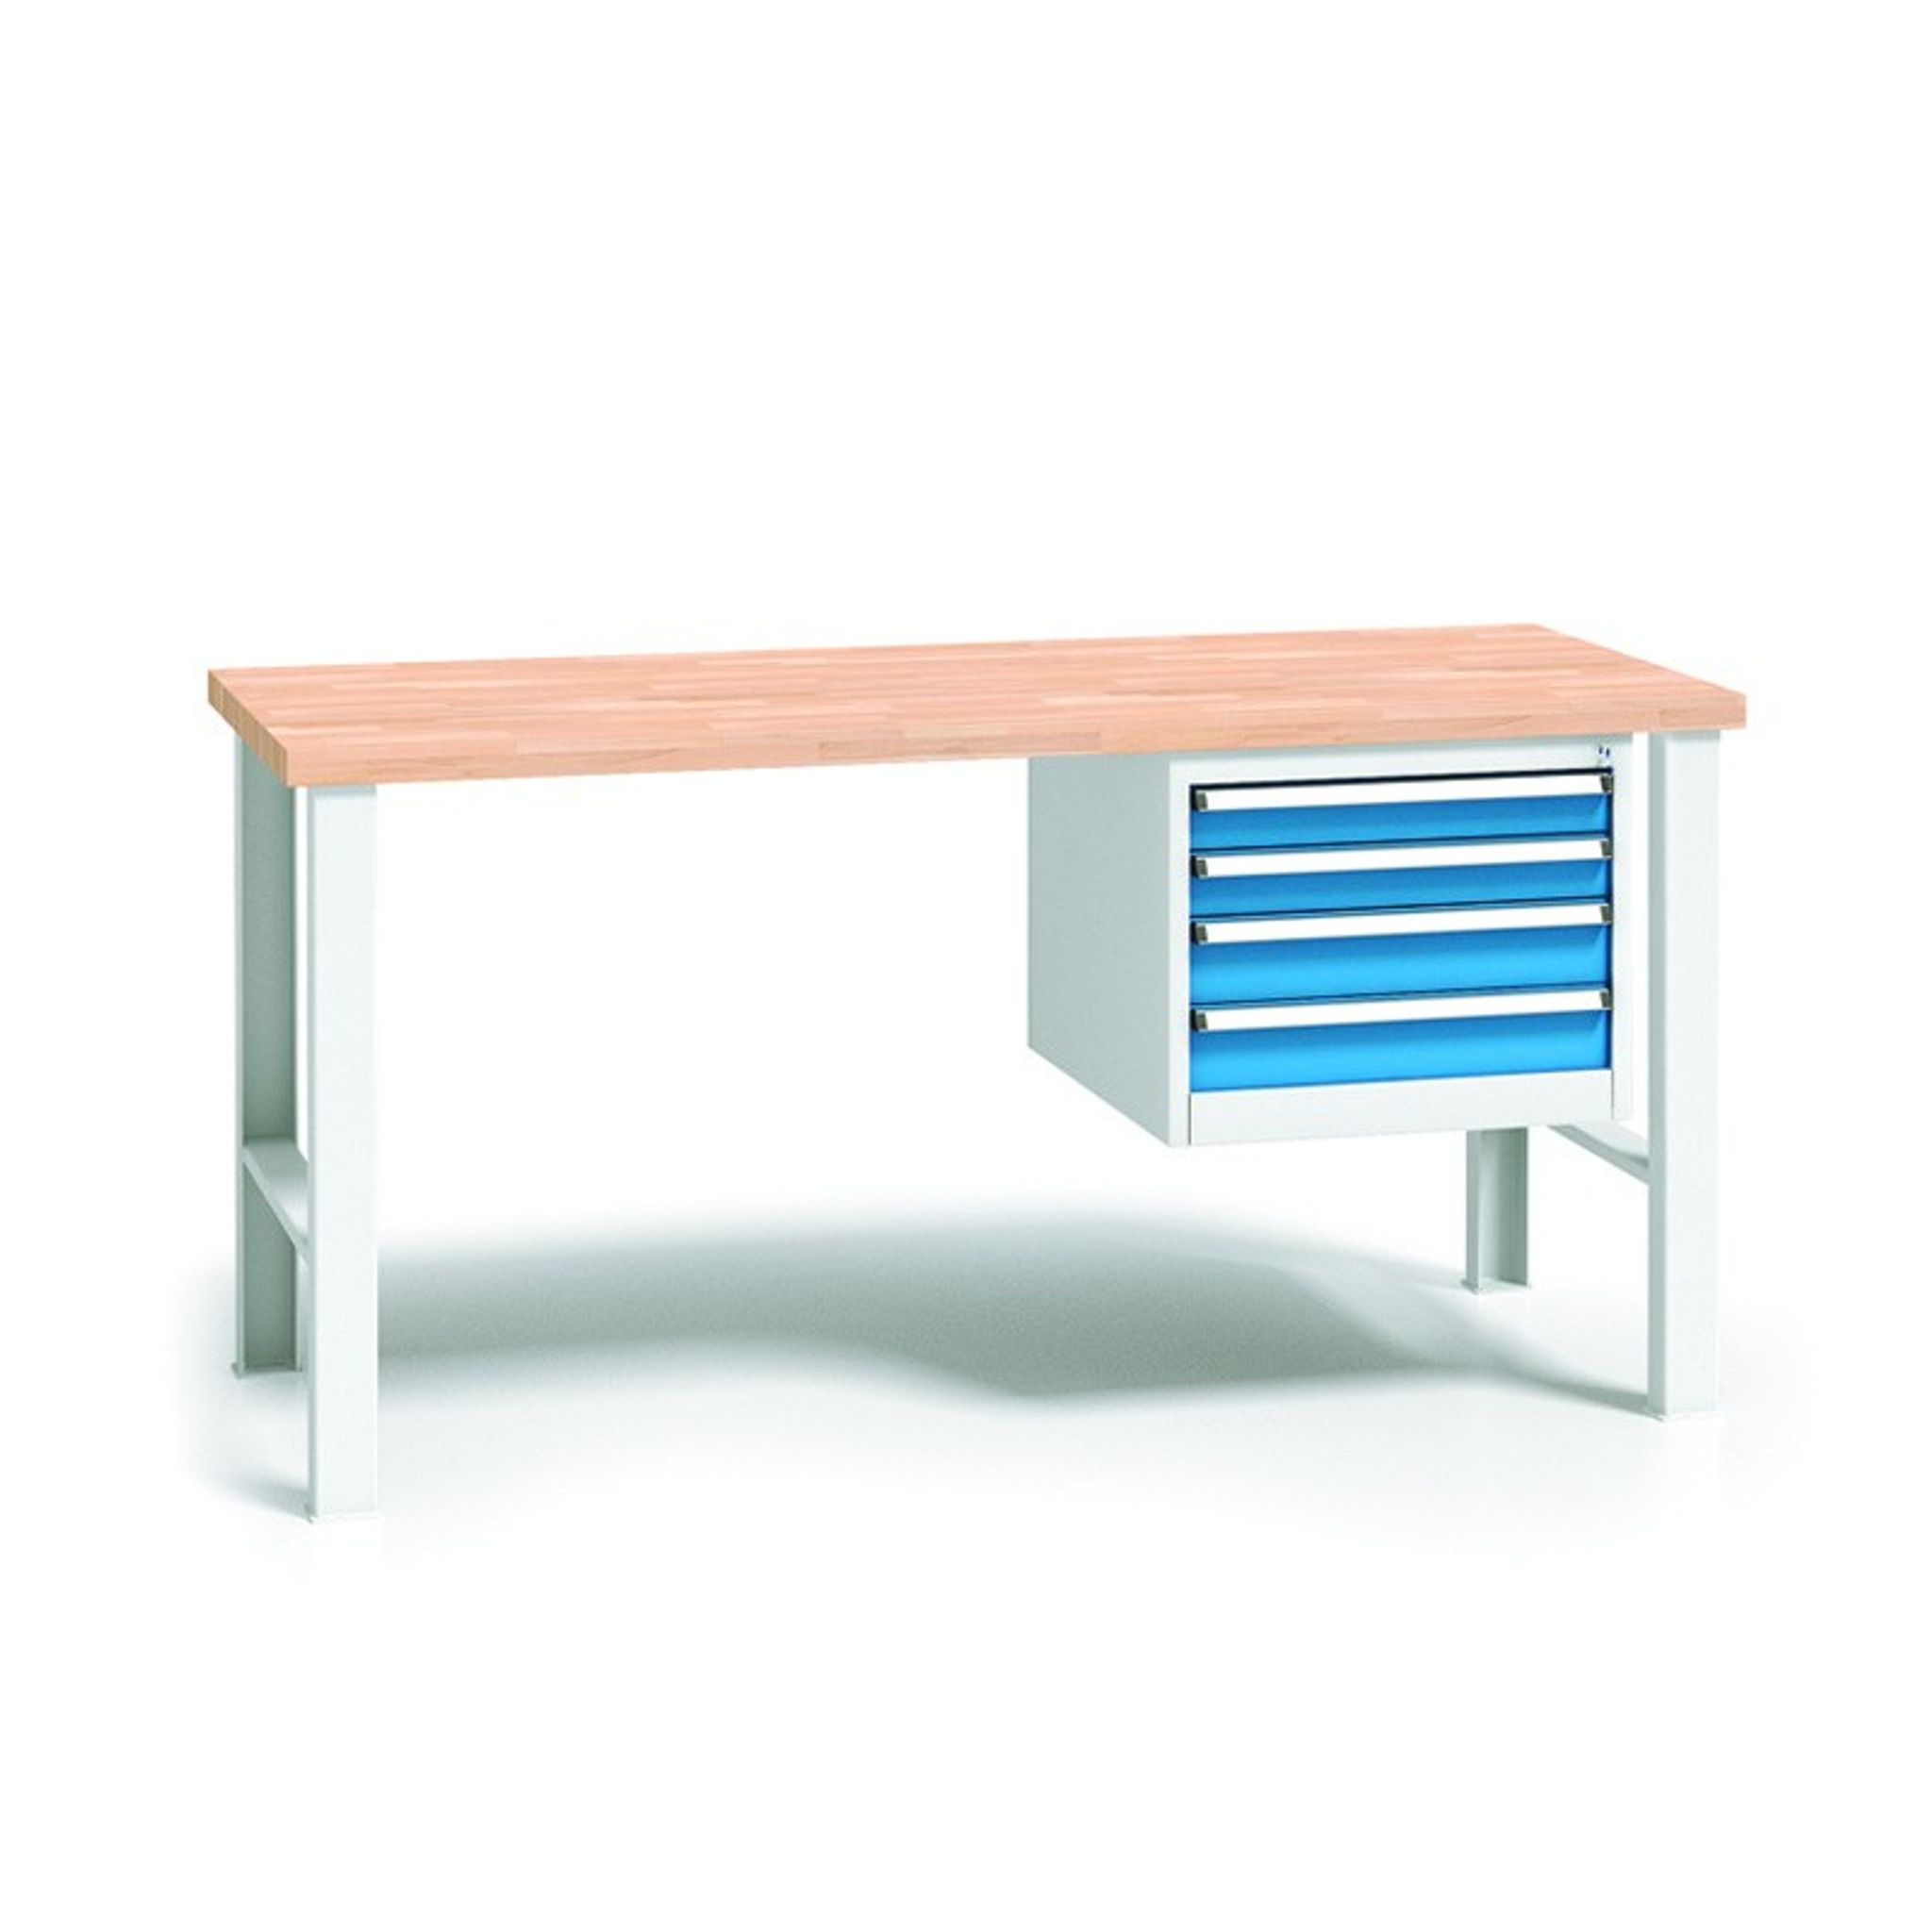 Profesjonalny stół warsztatowy z drewnianym blatem roboczym, 2000x685x840 mm, 1x 4 szufladowy kontener